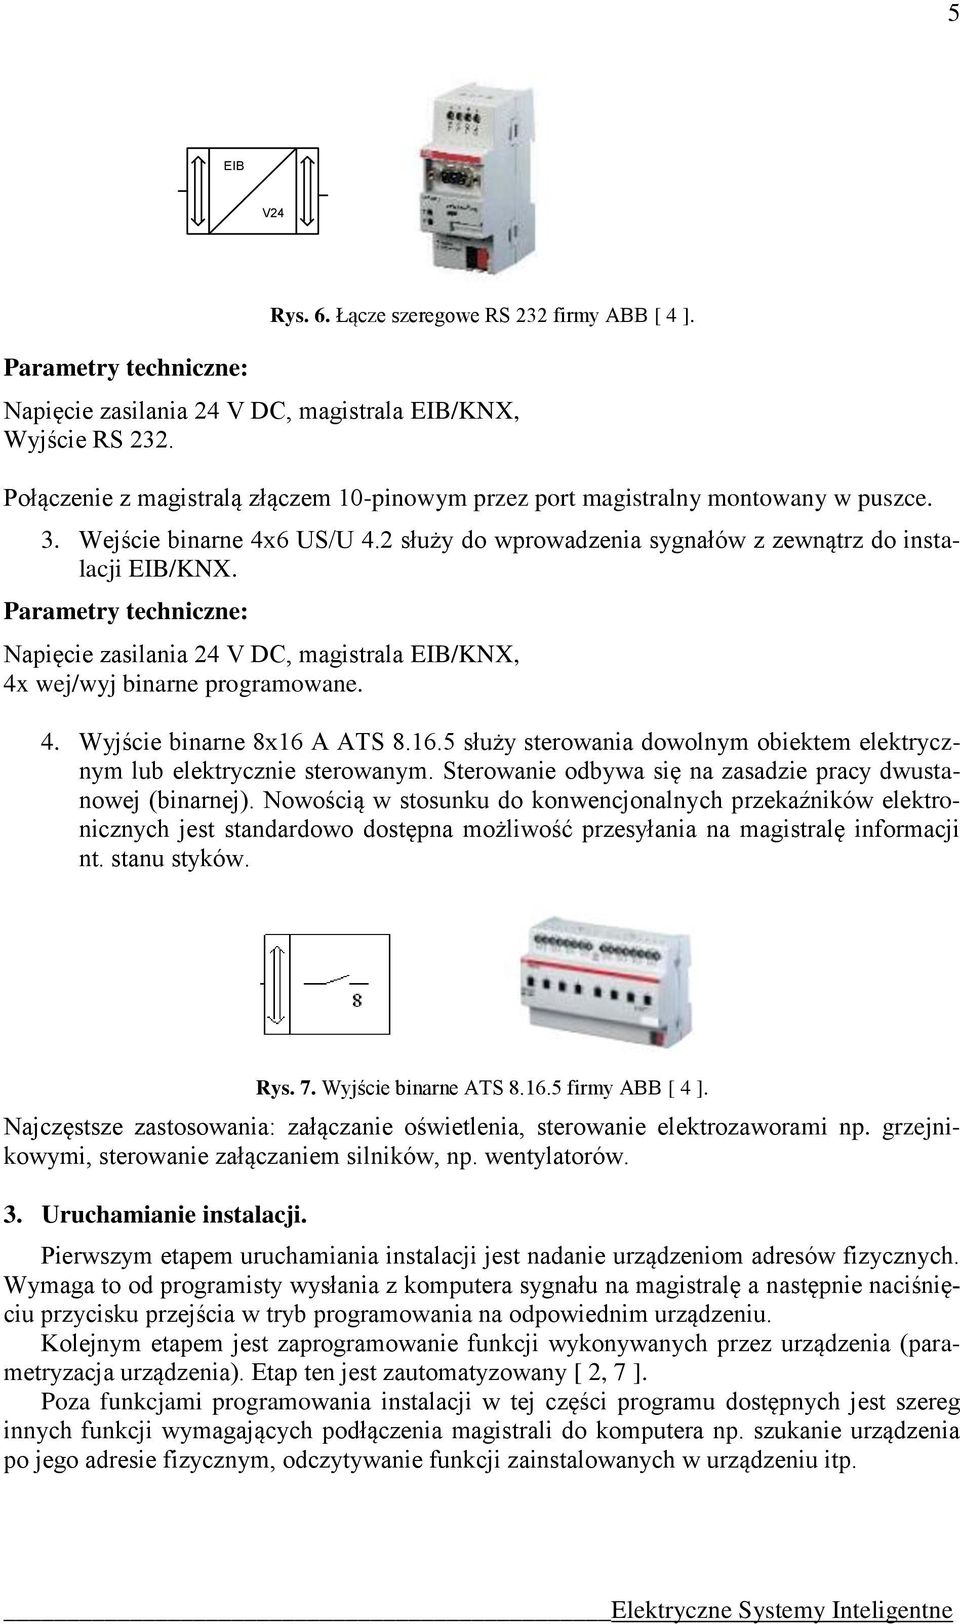 Parametry techniczne: Napięcie zasilania 24 V DC, magistrala EIB/KNX, 4x wej/wyj binarne programowane. 4. Wyjście binarne 8x16 